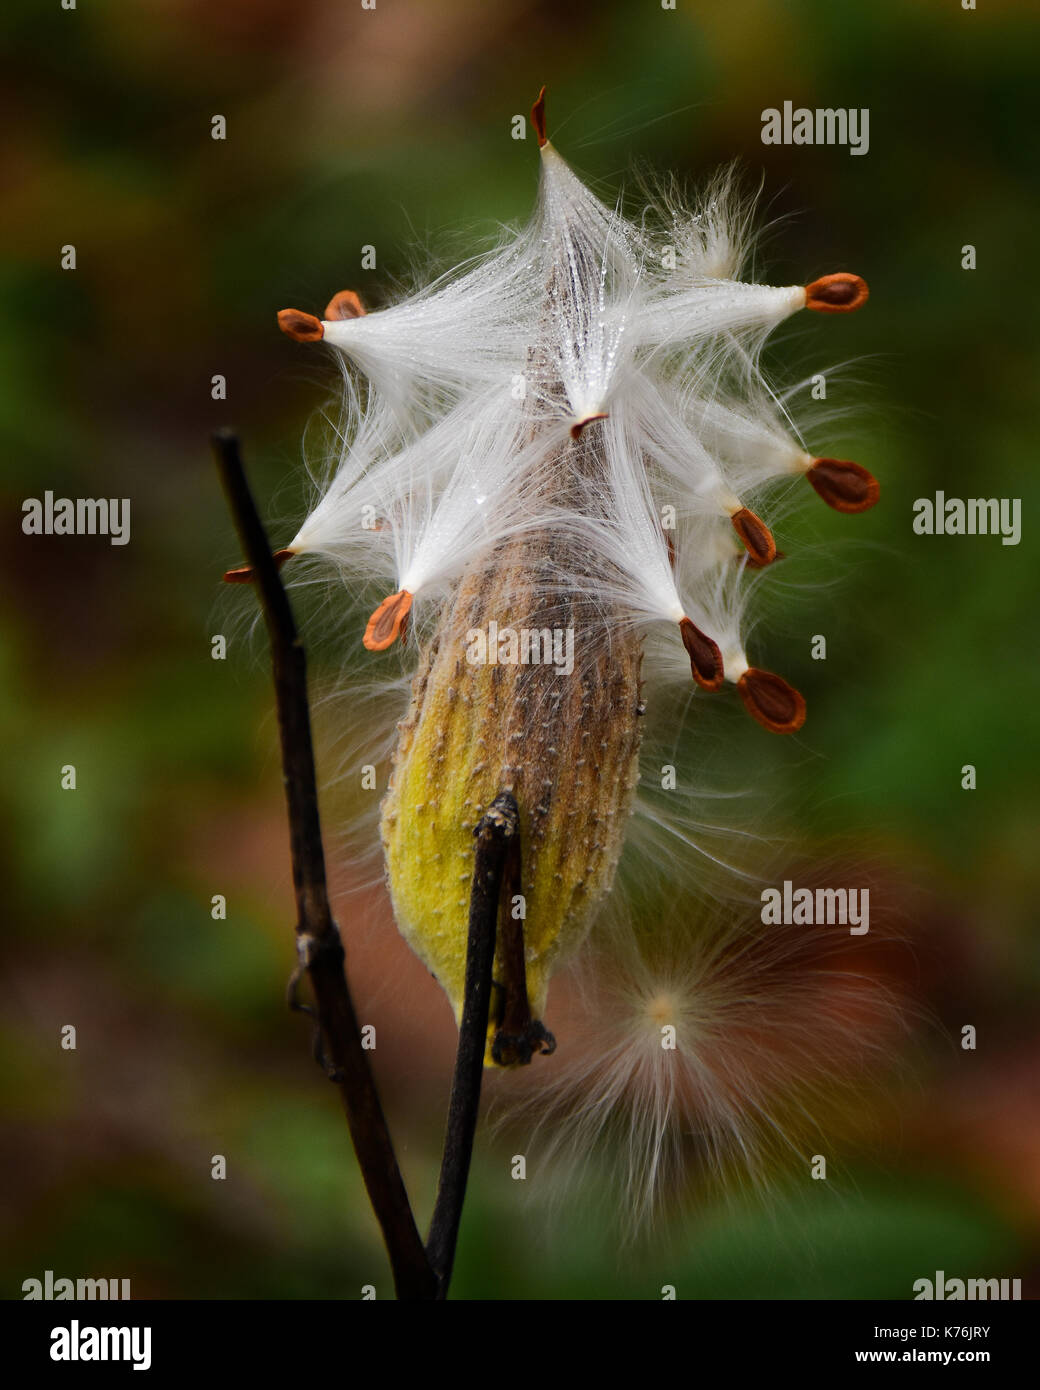 Milkweed, Asclepias syriaca, seedpod esplodere per disperdere i semi al vento in un prato in Adirondack, New York foresta. Foto Stock